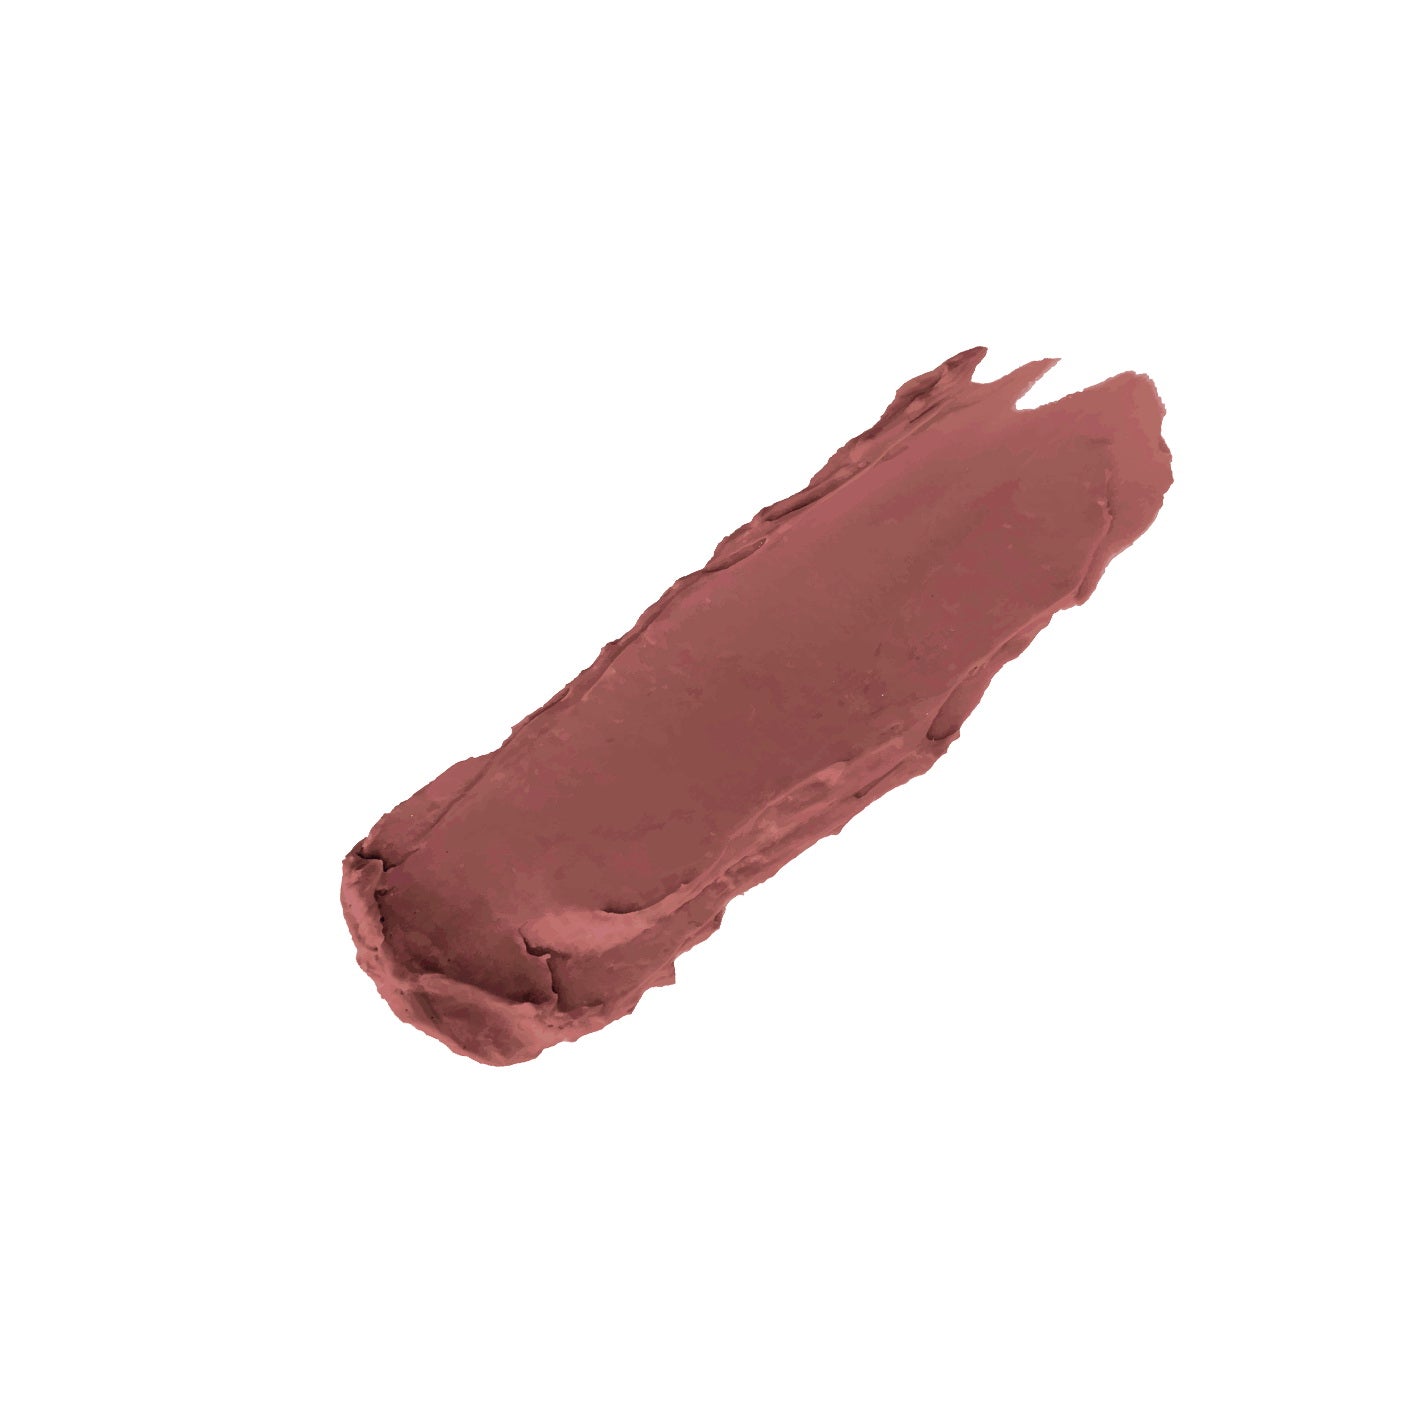 Creamy Matte Lipstick 18 - Cute Smile 5gm